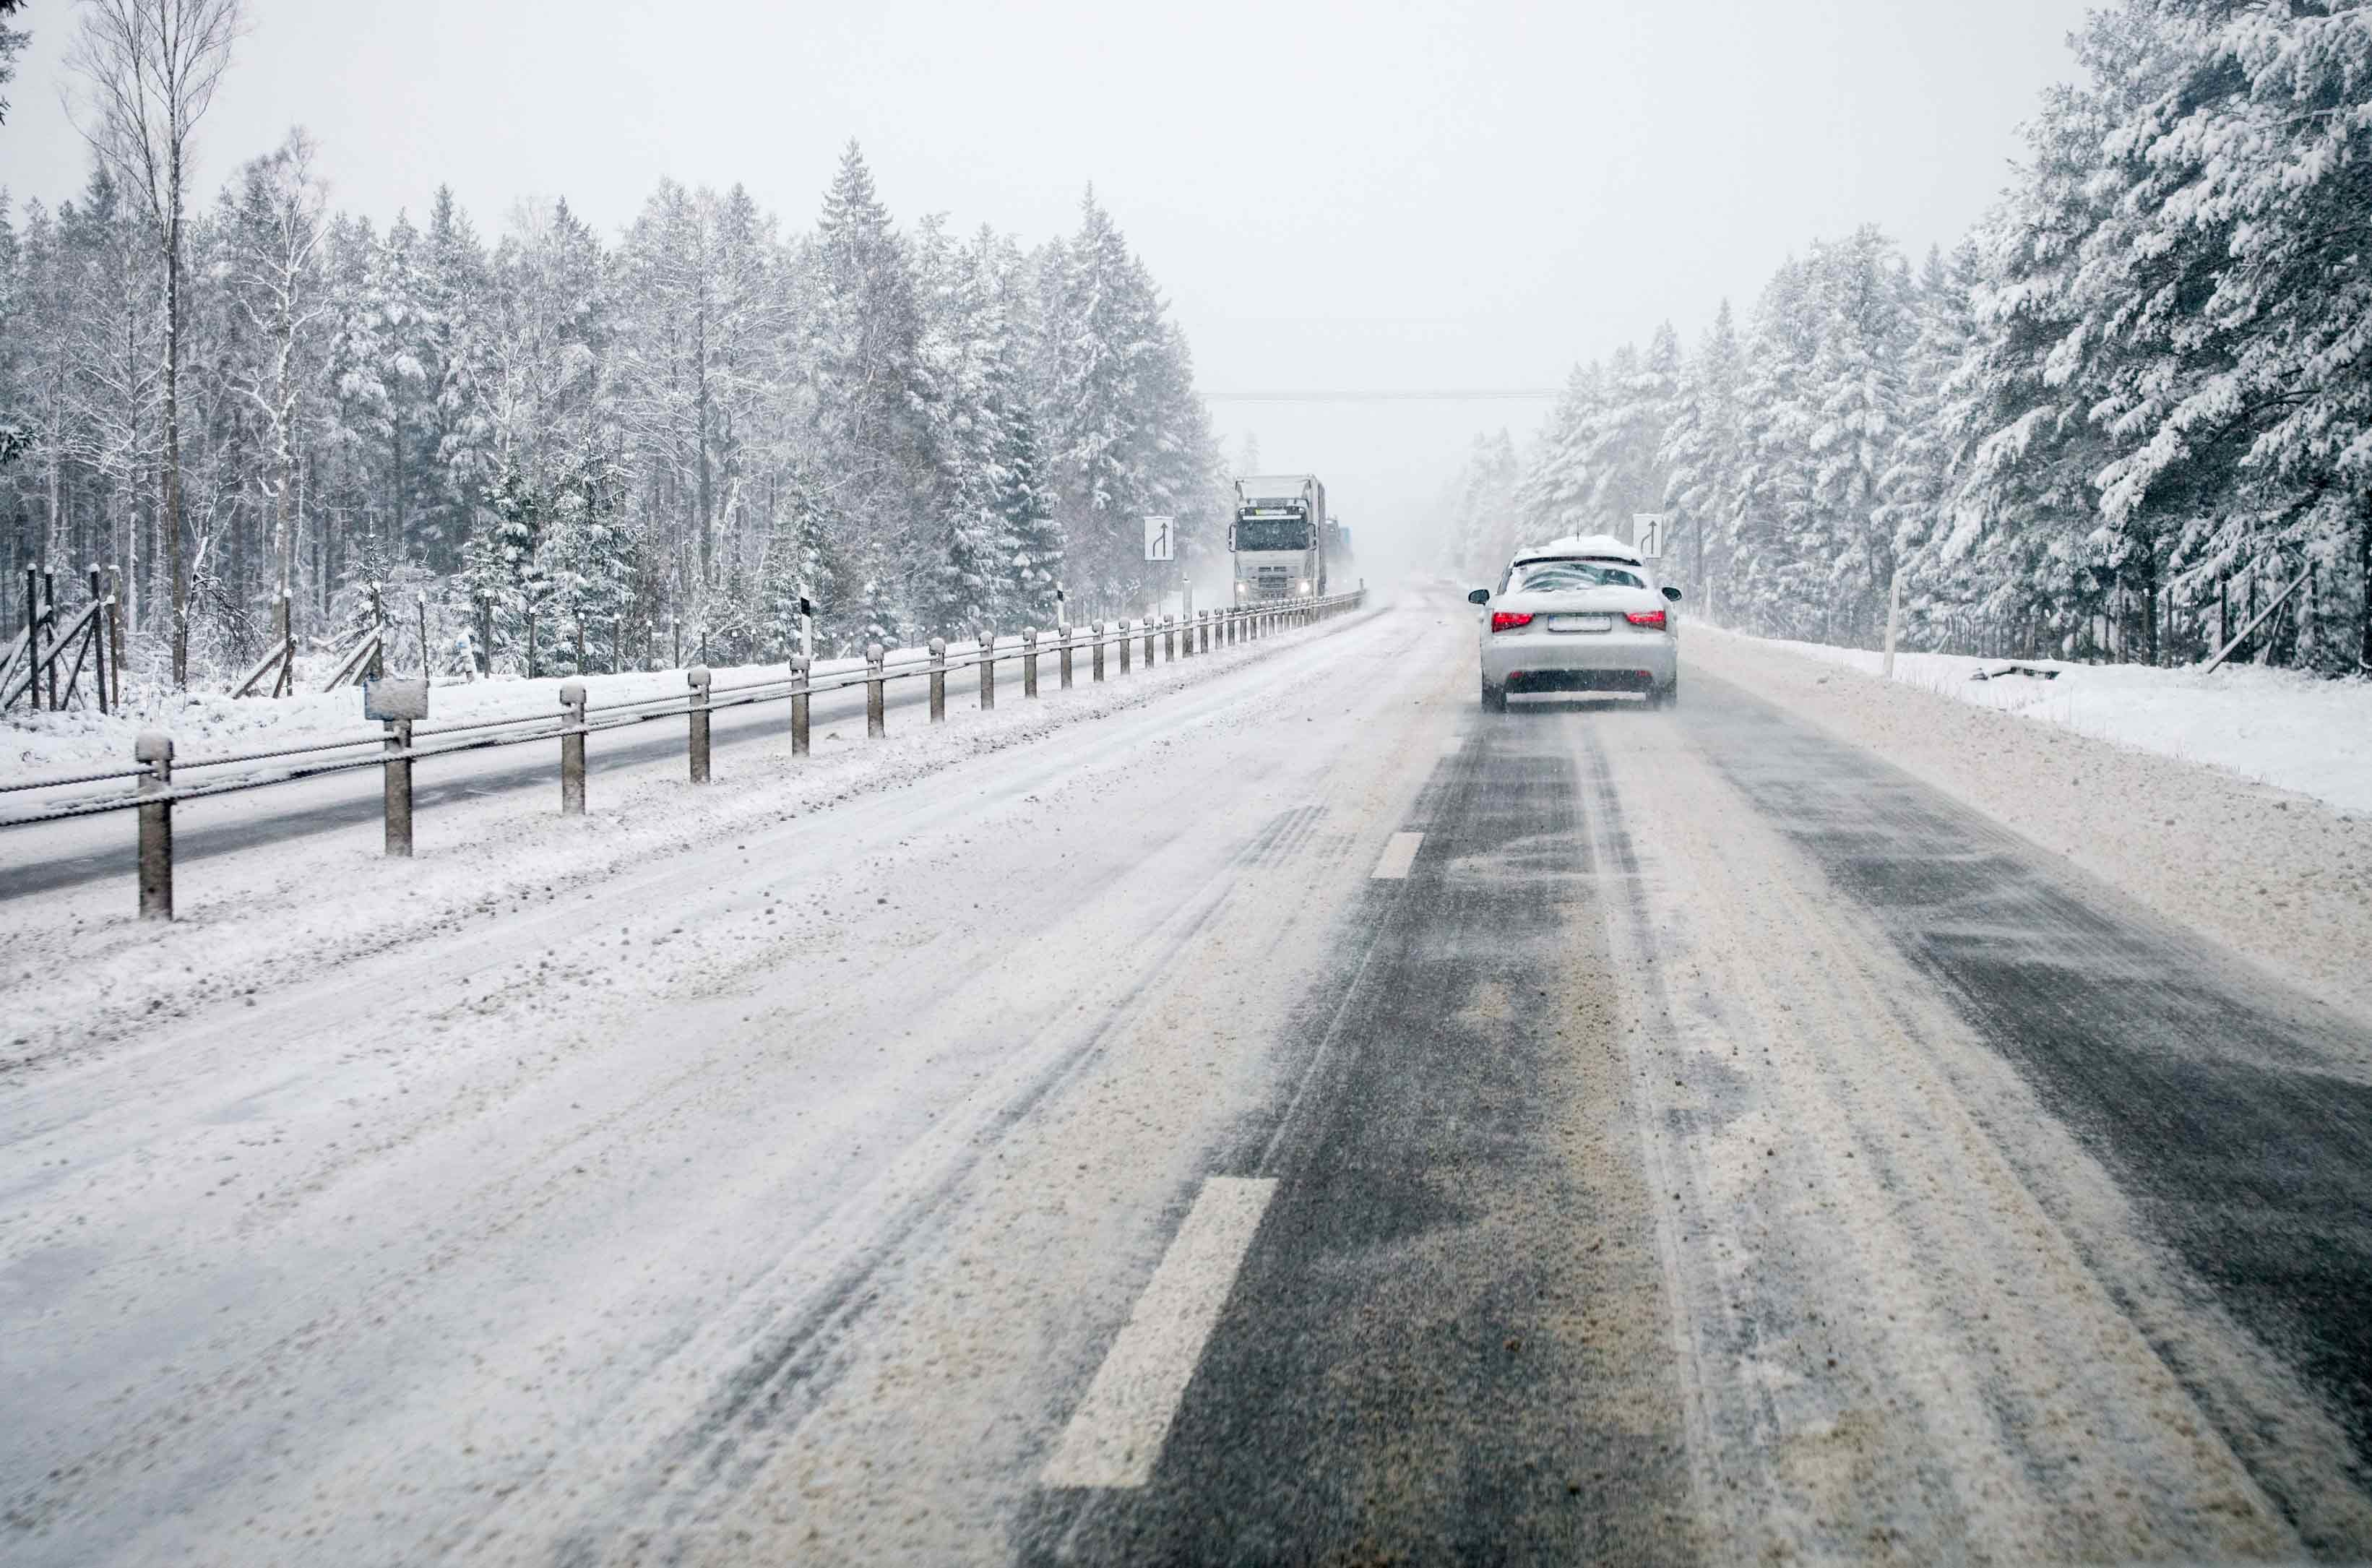 A car on a snowy road